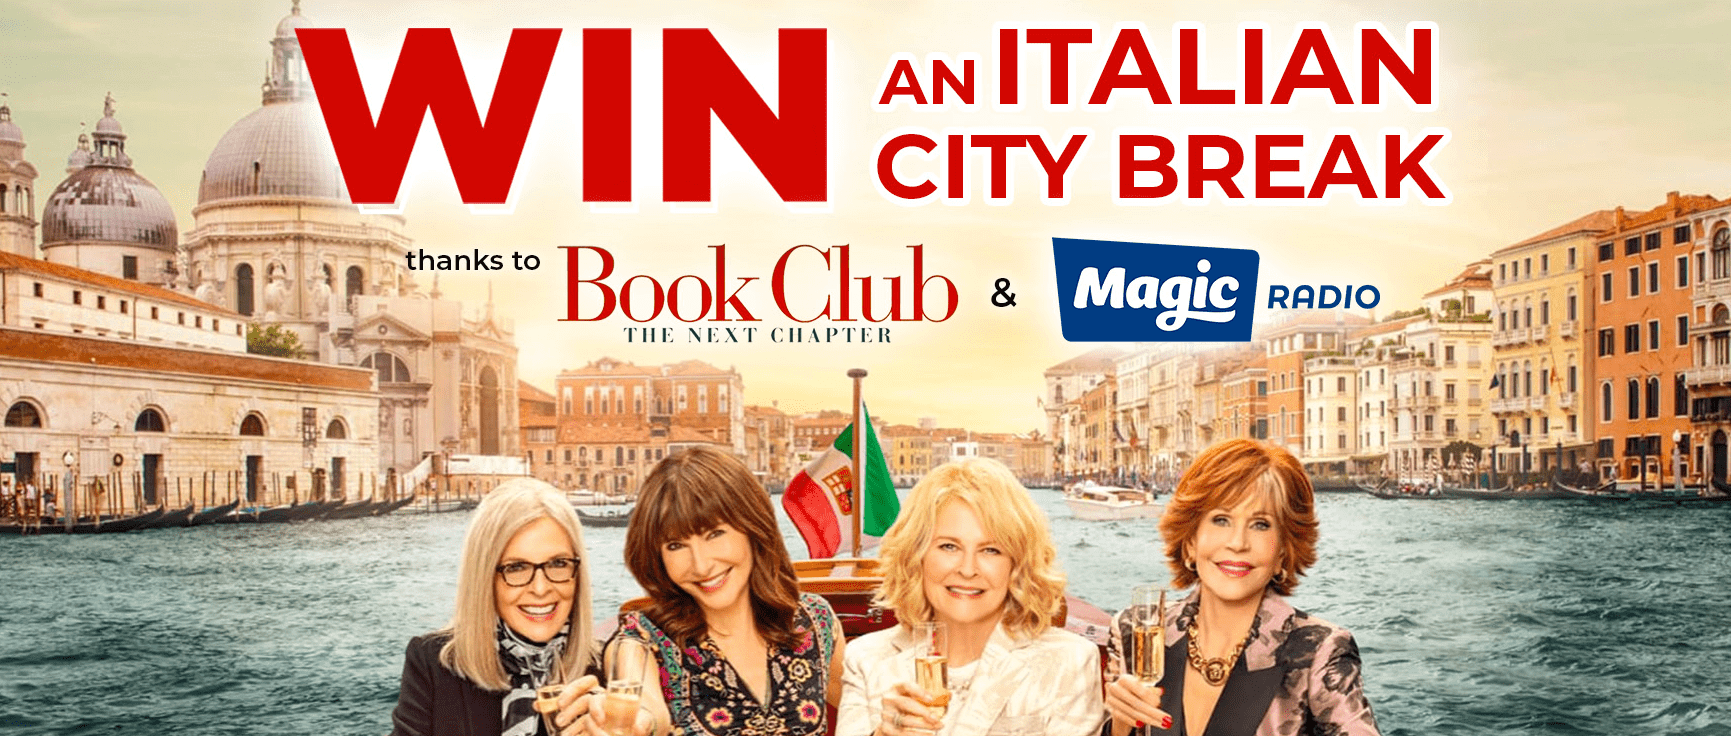 Win an Italian city break with Magic Radio & Book Club